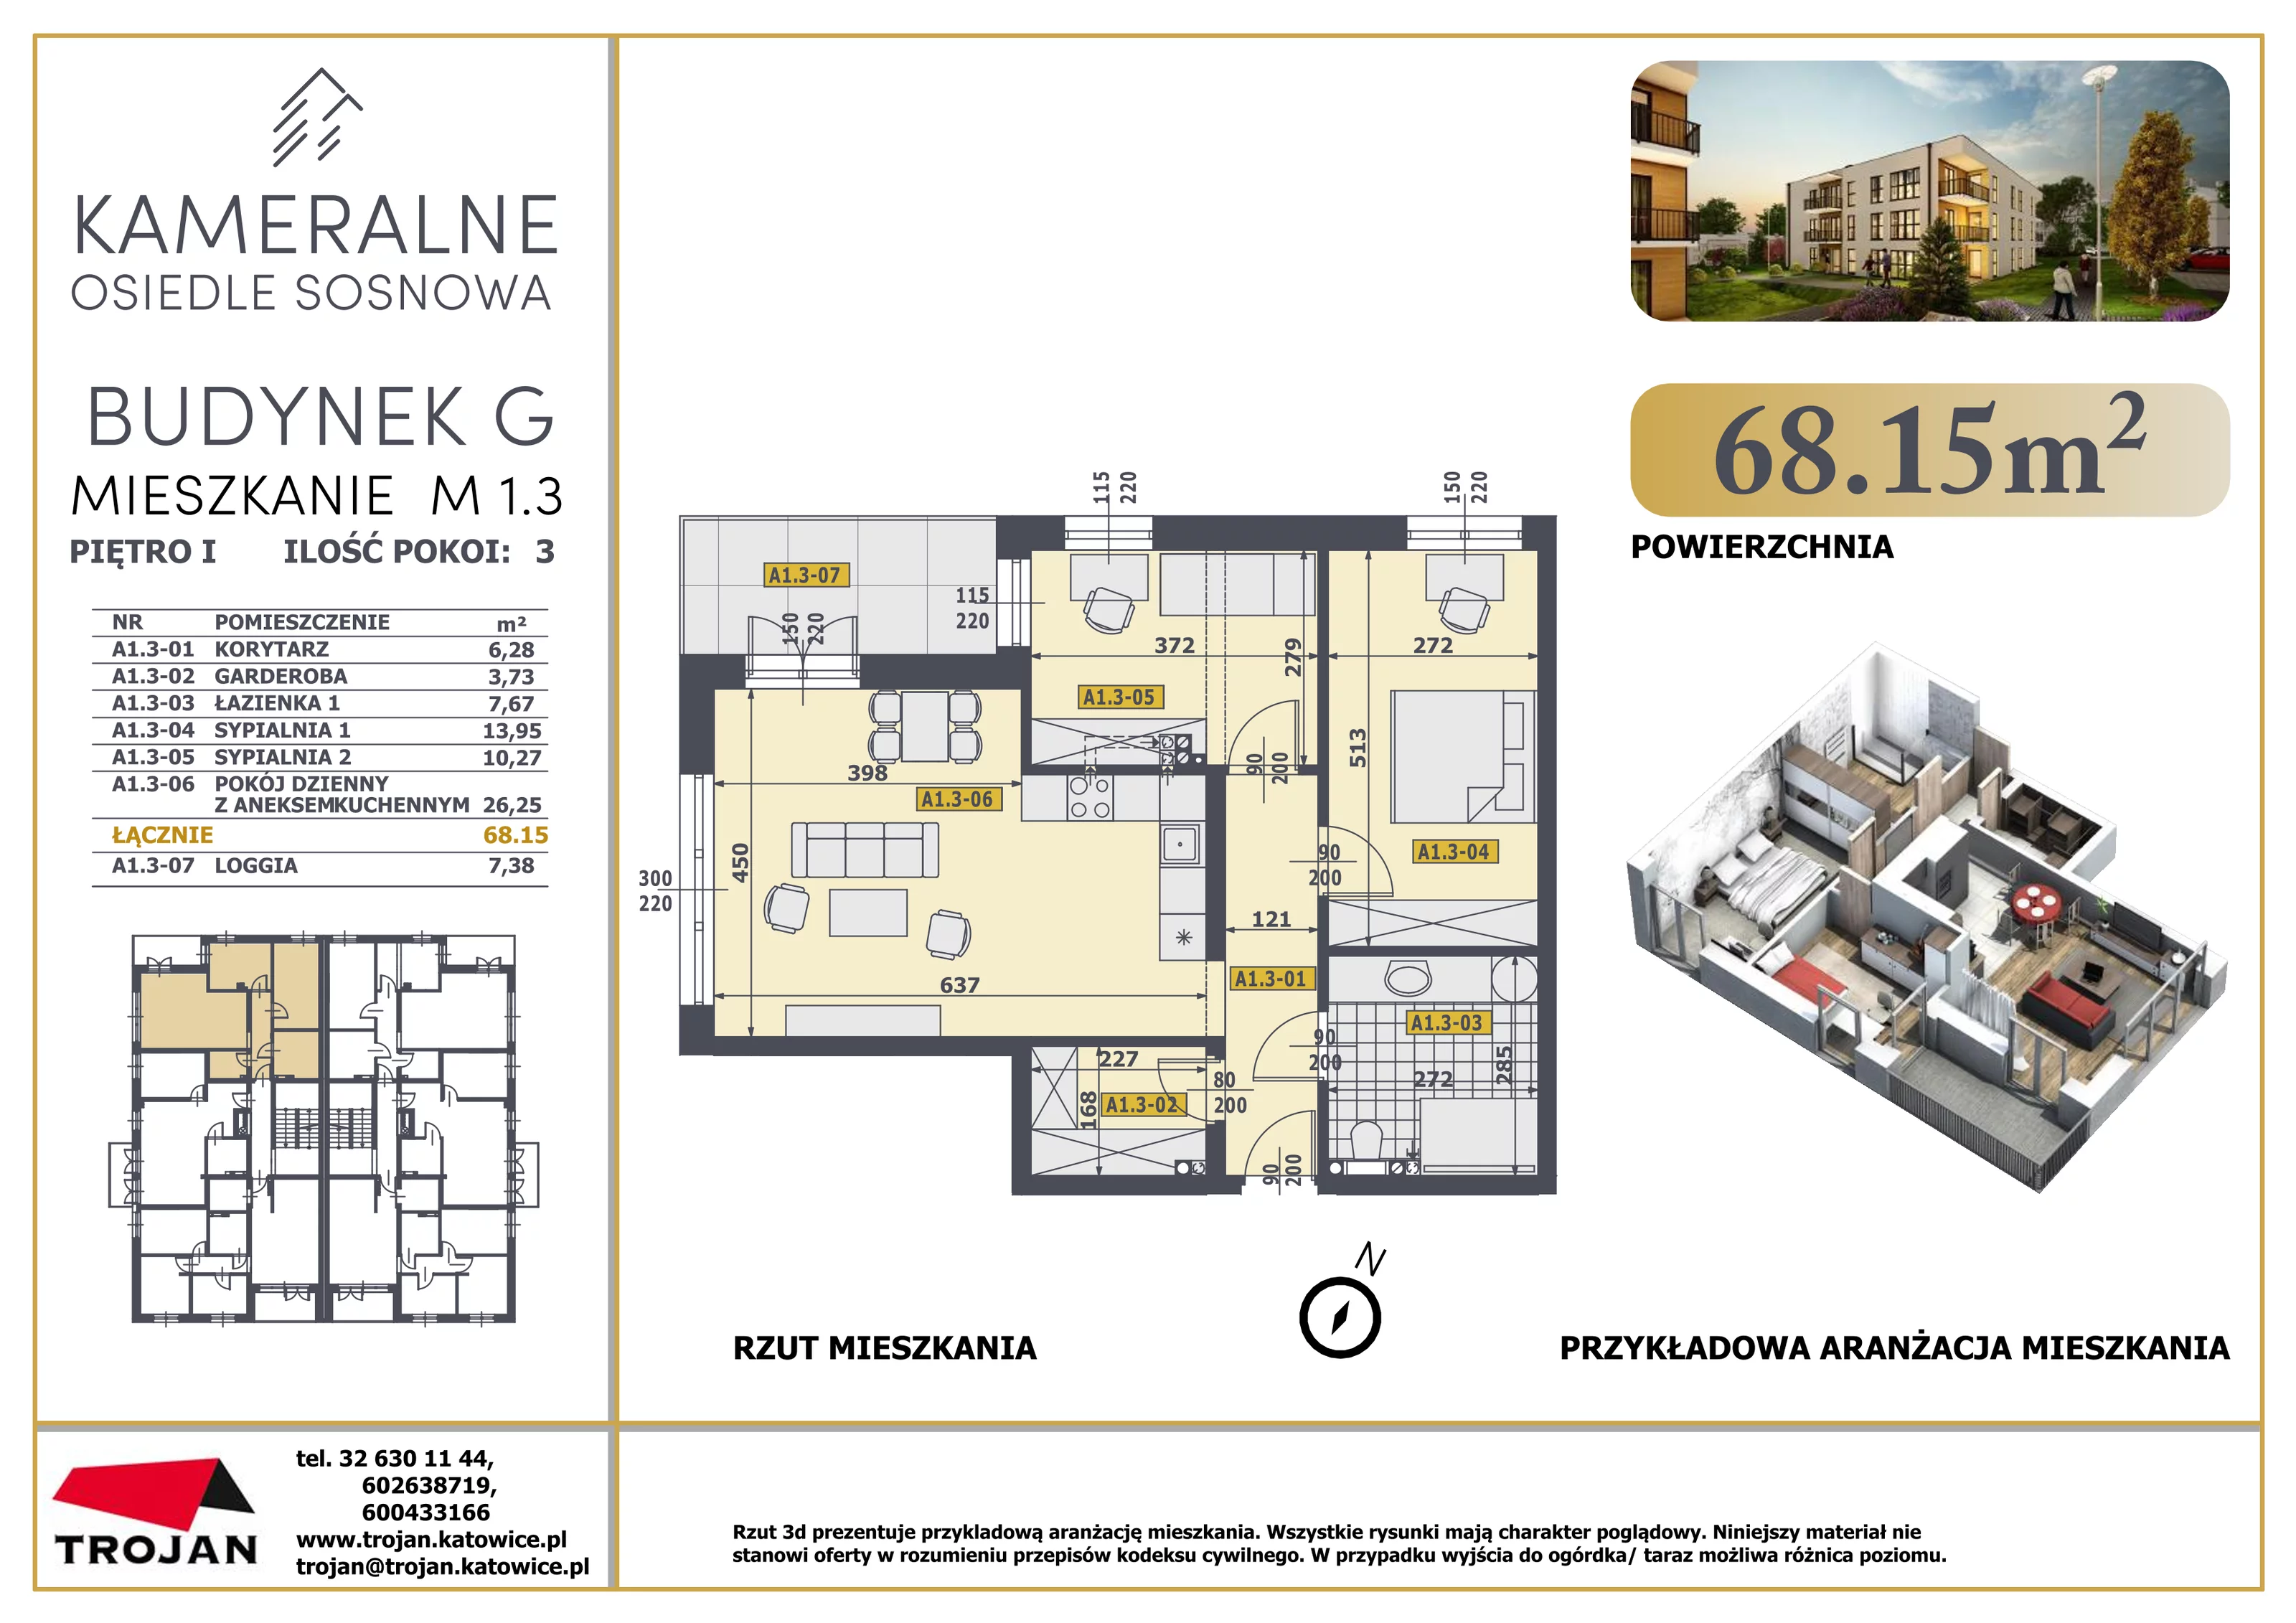 Mieszkanie 68,15 m², piętro 1, oferta nr M 1.3, Osiedle Sosnowa, Rybnik, Paruszowiec-Piaski, ul. Sosnowa 20